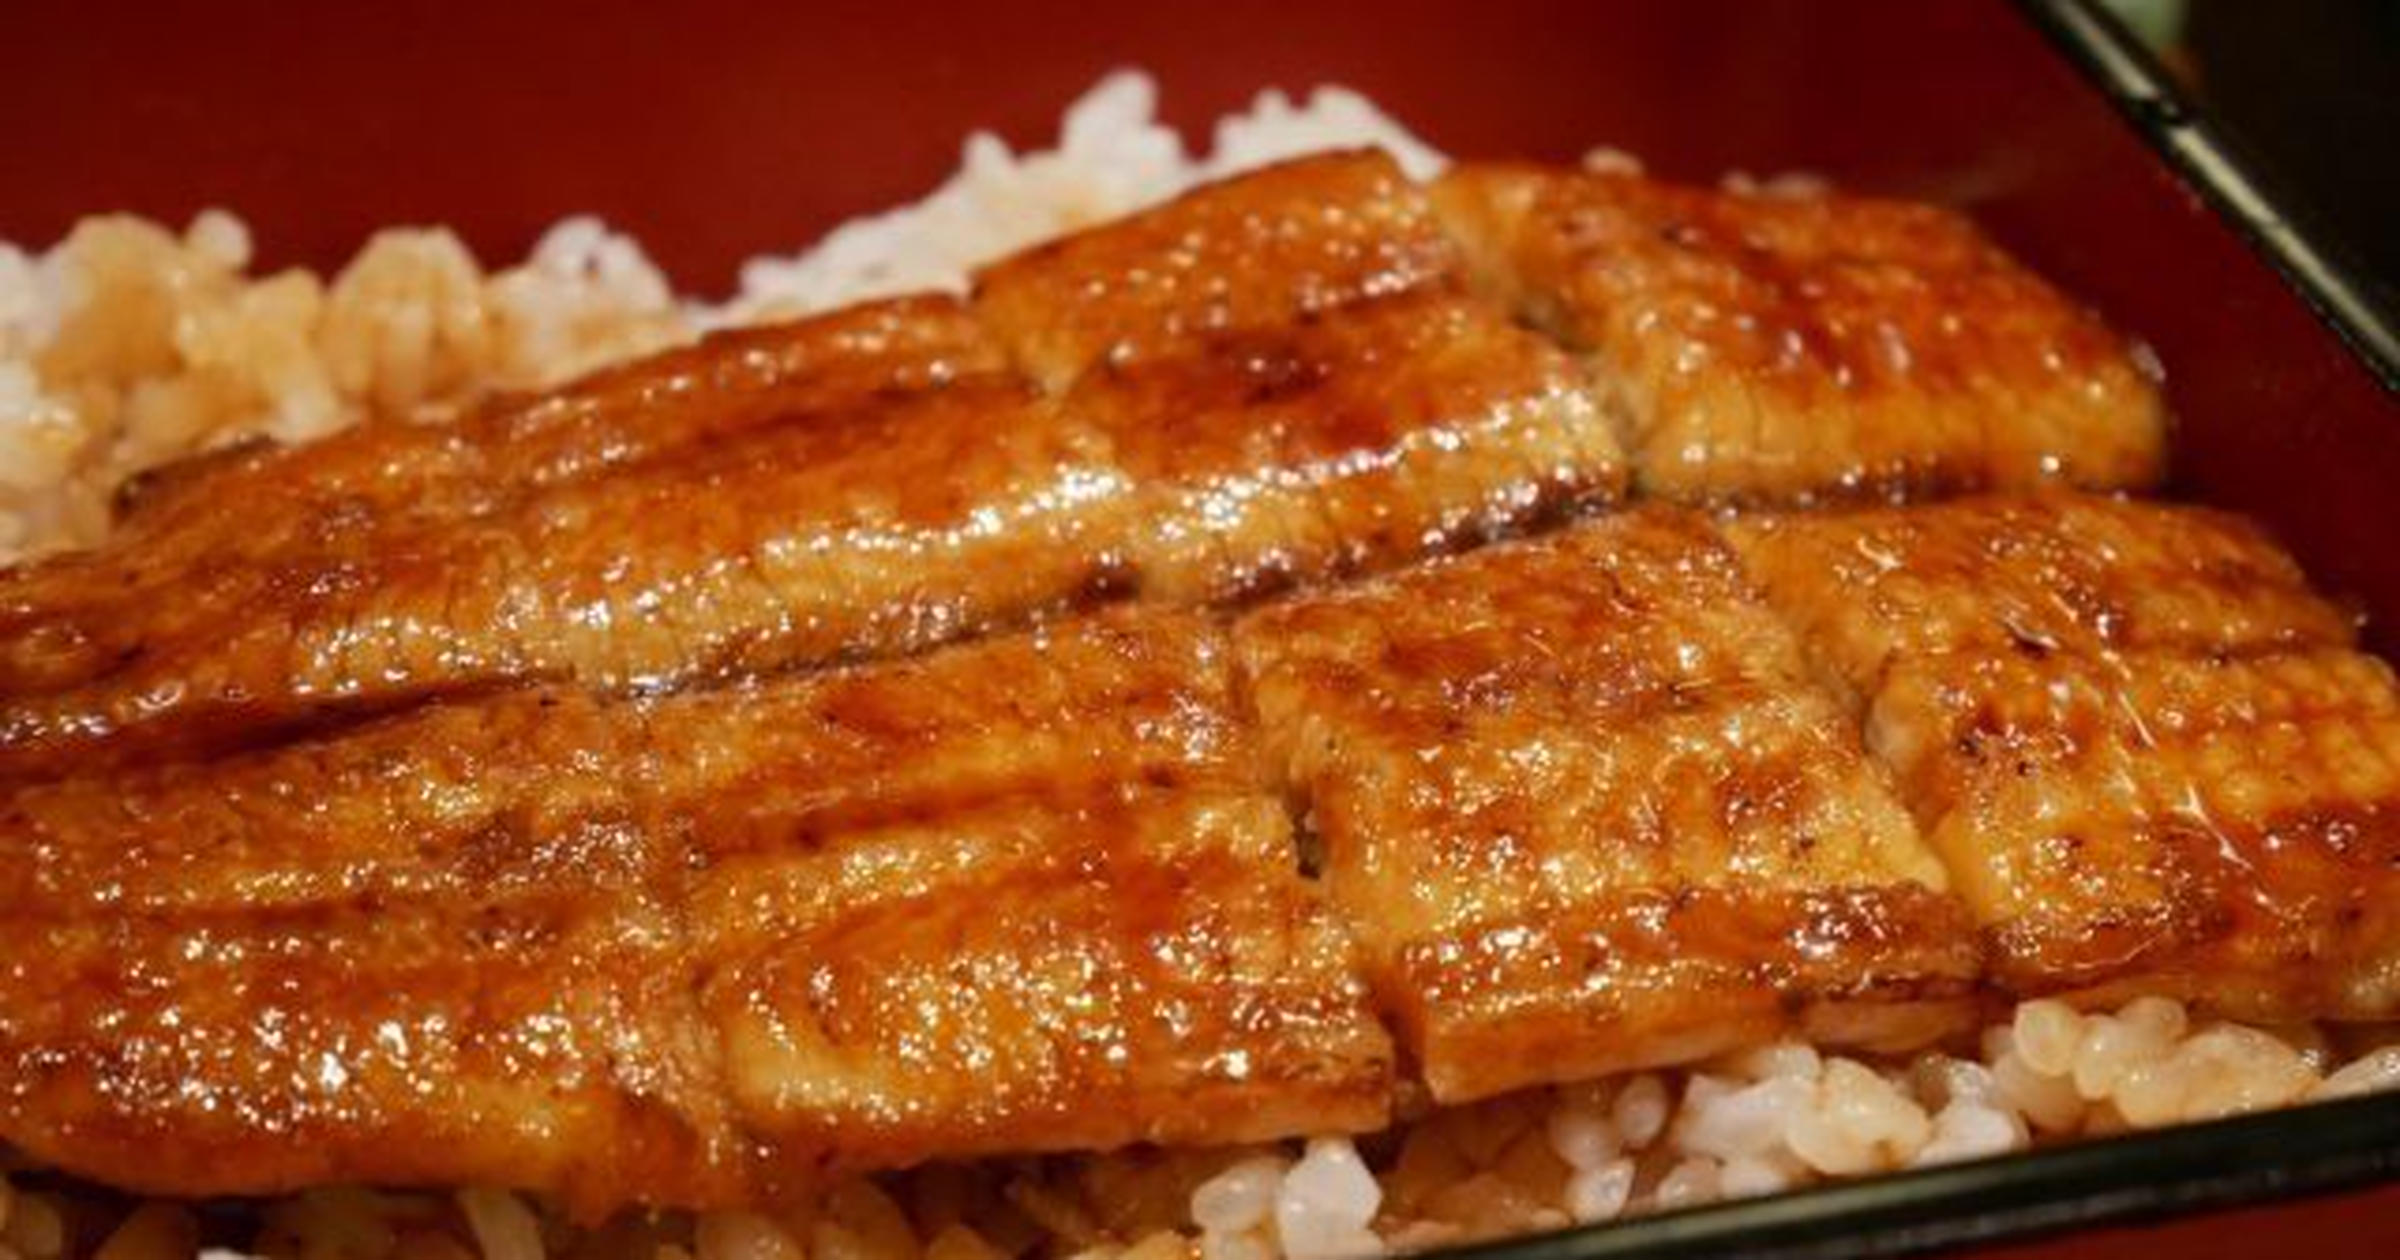 土用丑の日に食べたい ウナギの蒲焼 調理法4選 関東と関西 名古屋流と柳川流もある トクバイニュース